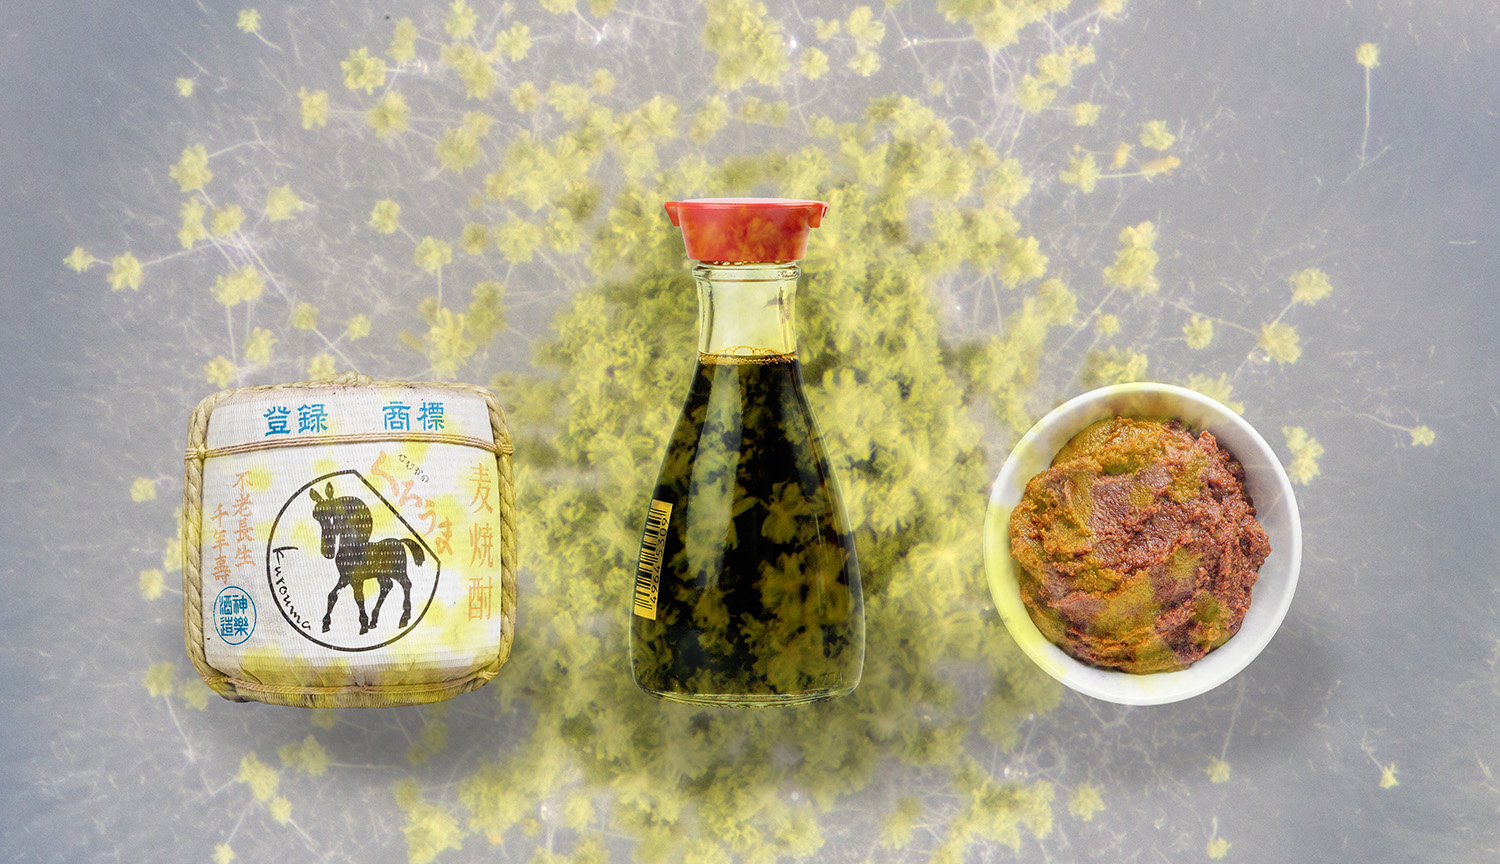 Un barril de sake, un tarro de salsa de soya y un cuenco de pasta de miso sobre un fondo de moho Aspergillus esponjoso, de color amarillo verdoso.